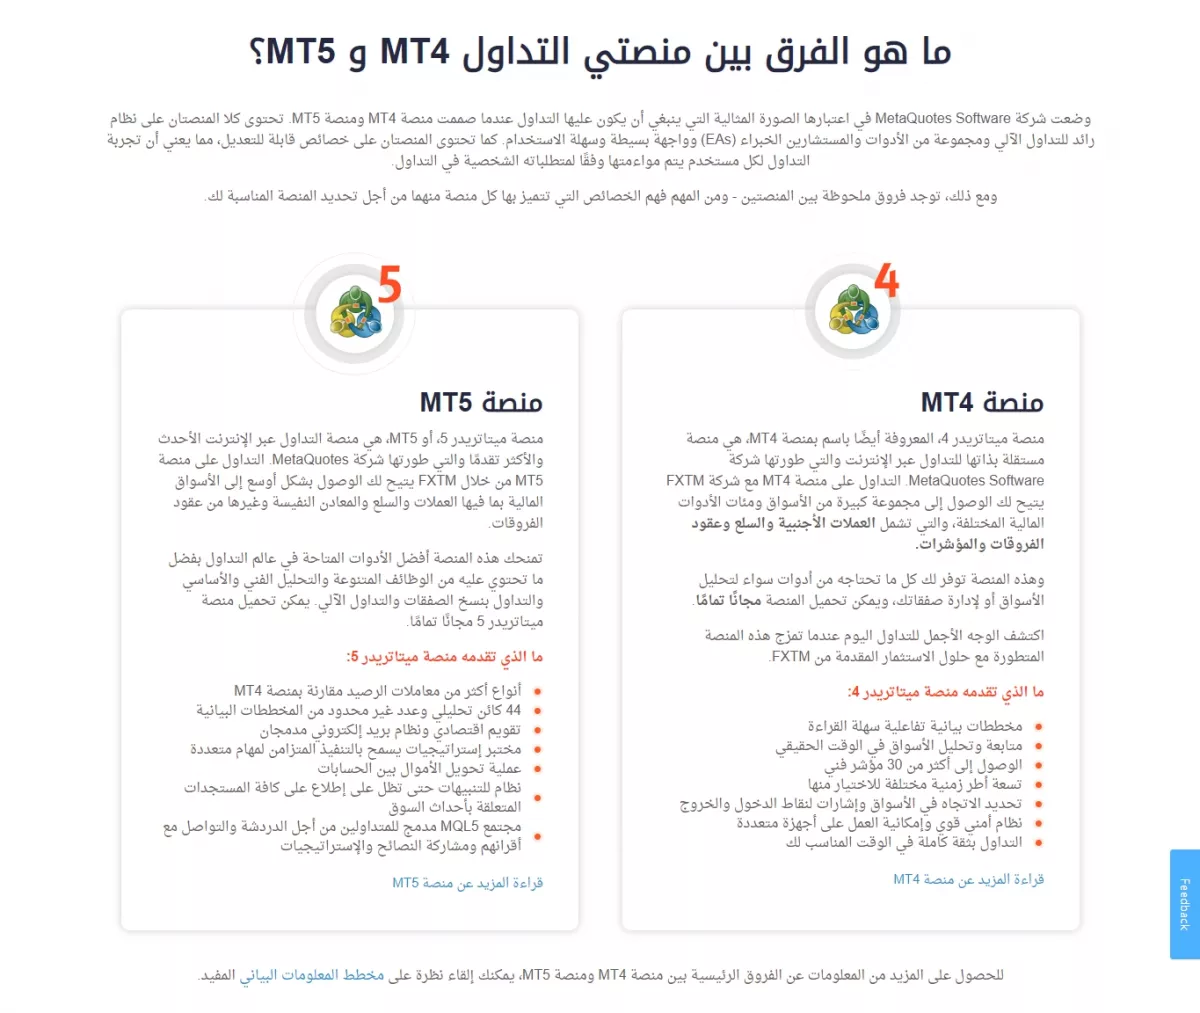 منصات التداول الخاصة بشركة FXTM، ميتاتريدير 4 وميتاتريدير 5